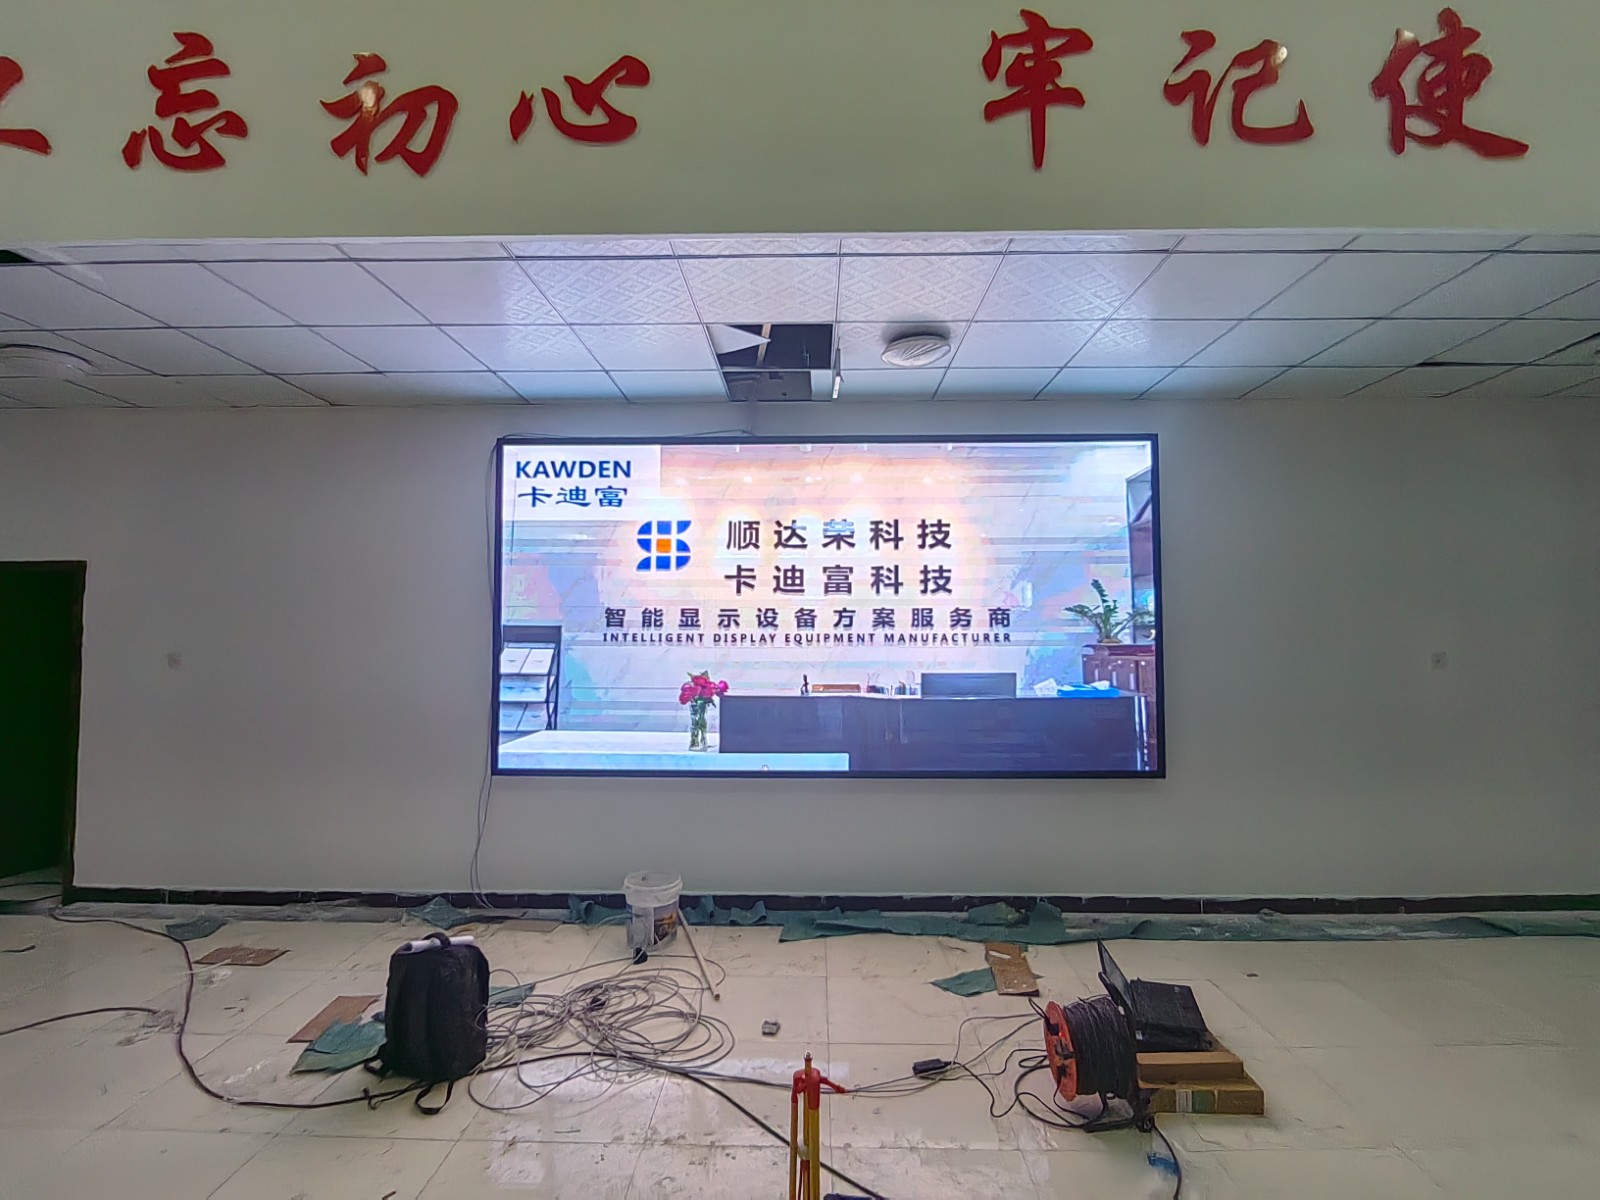 西藏拉萨市某通讯设备销售部项目P2.5led显示屏展示案例图片6